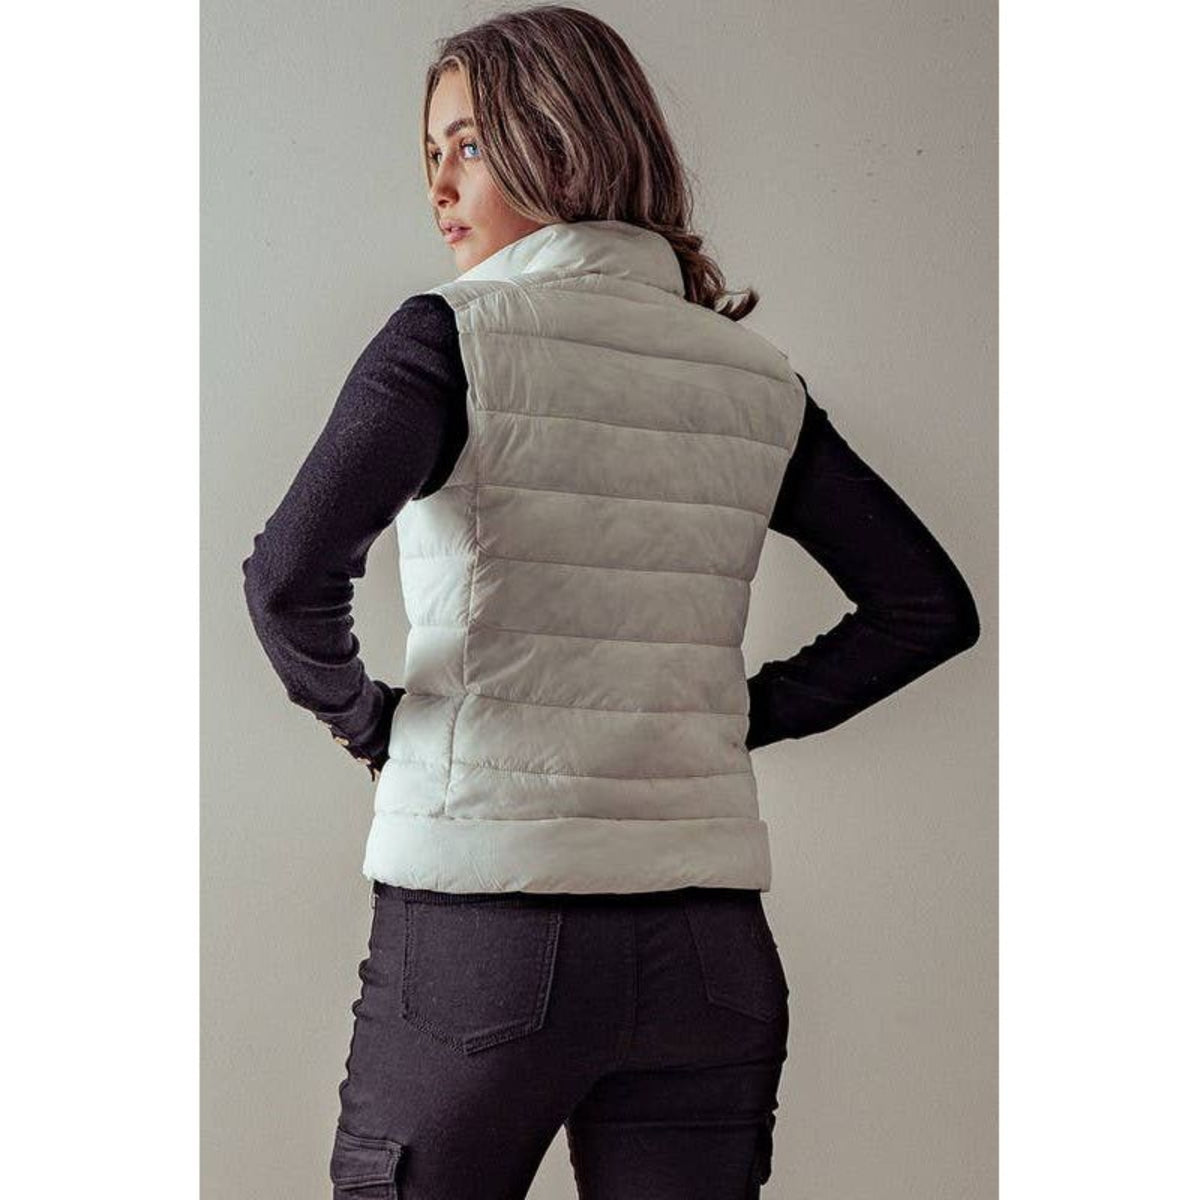 High neck zip up puffer vest; women's apparel